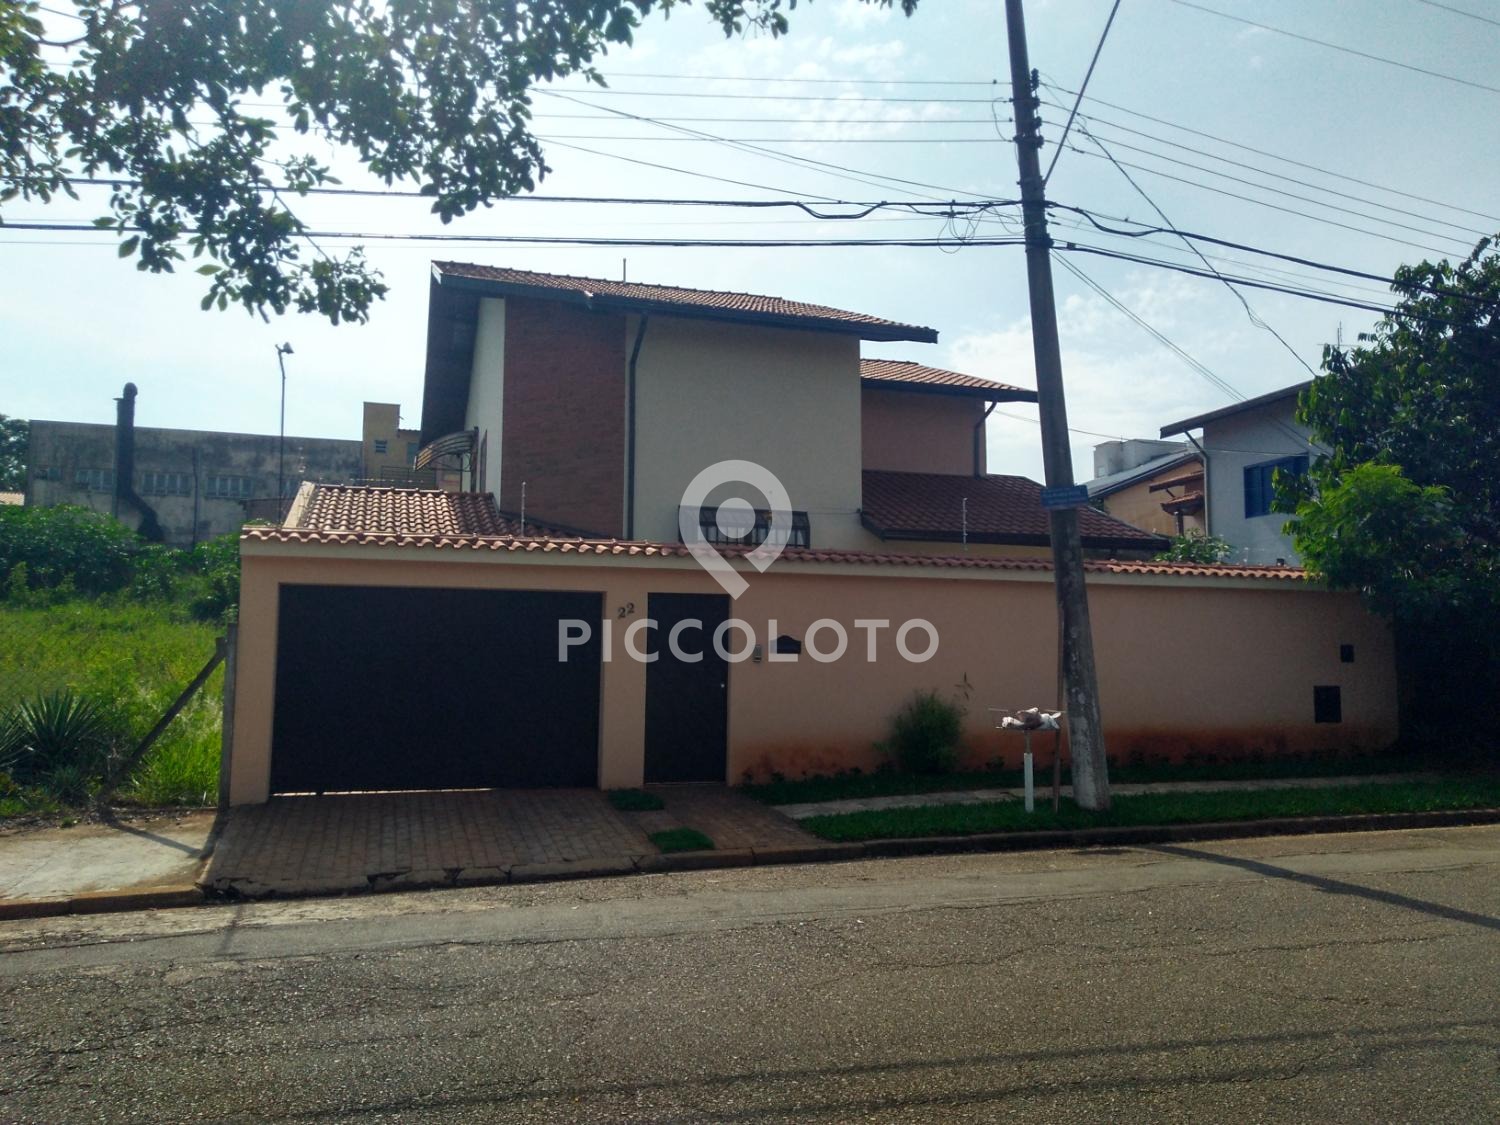 Piccoloto - Casa à venda no Parque das Universidades em Campinas